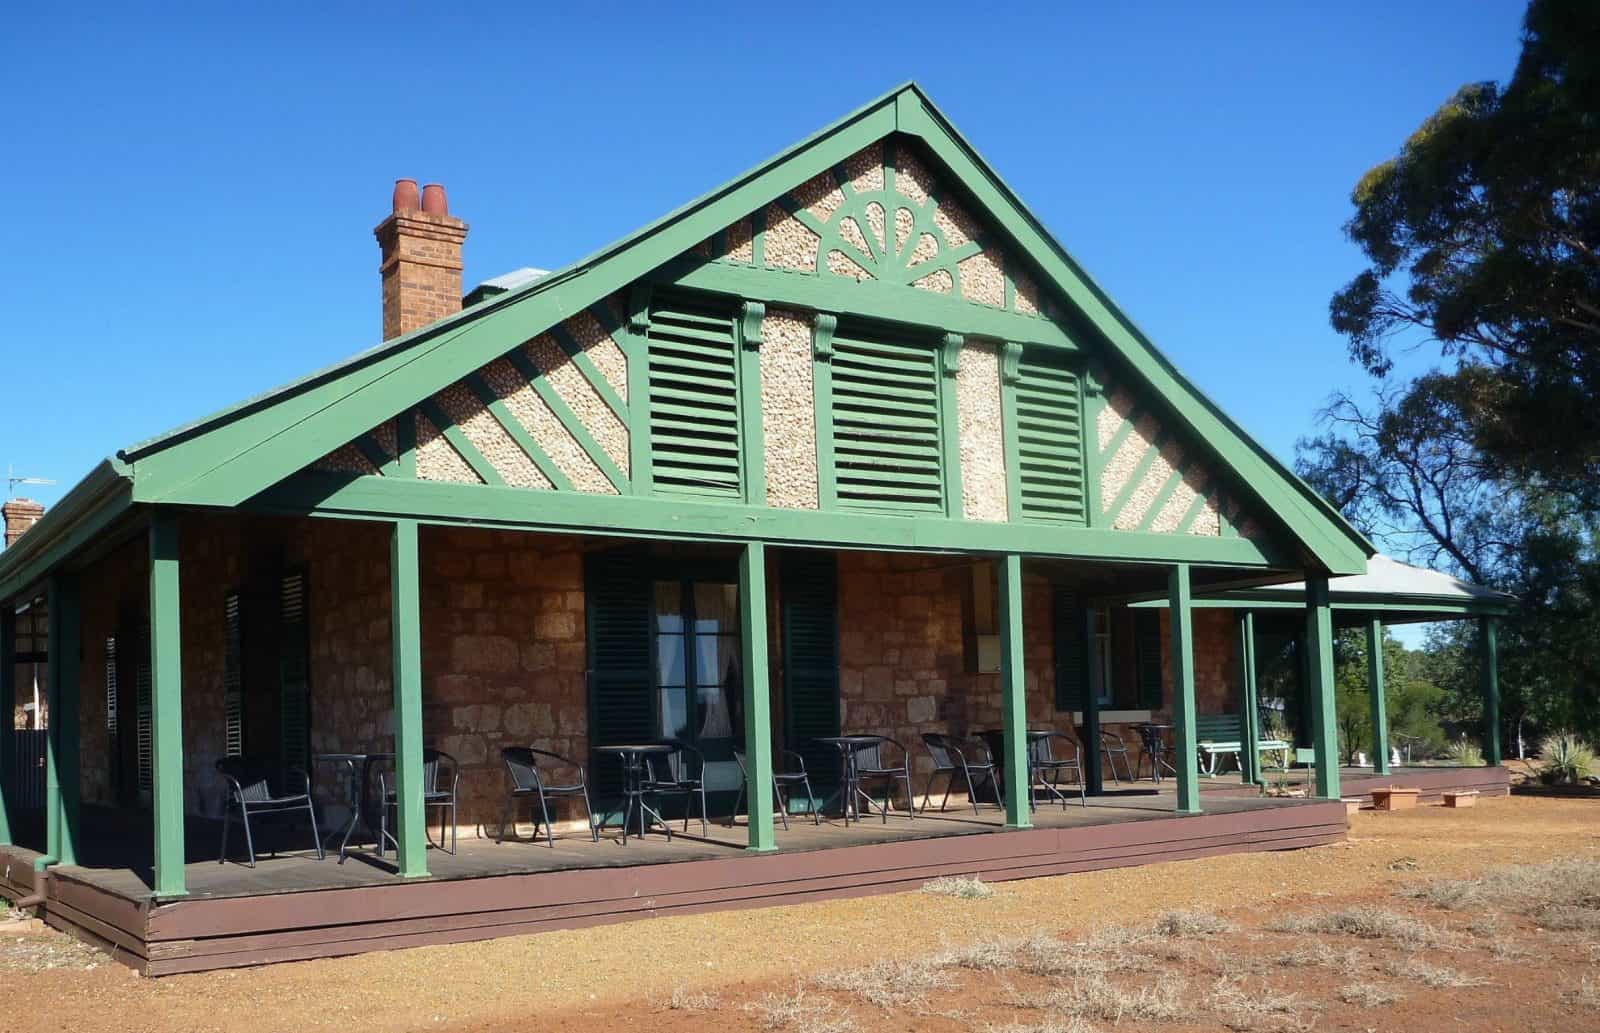 Warden Finnerty's House, Coolgardie, Western Australia